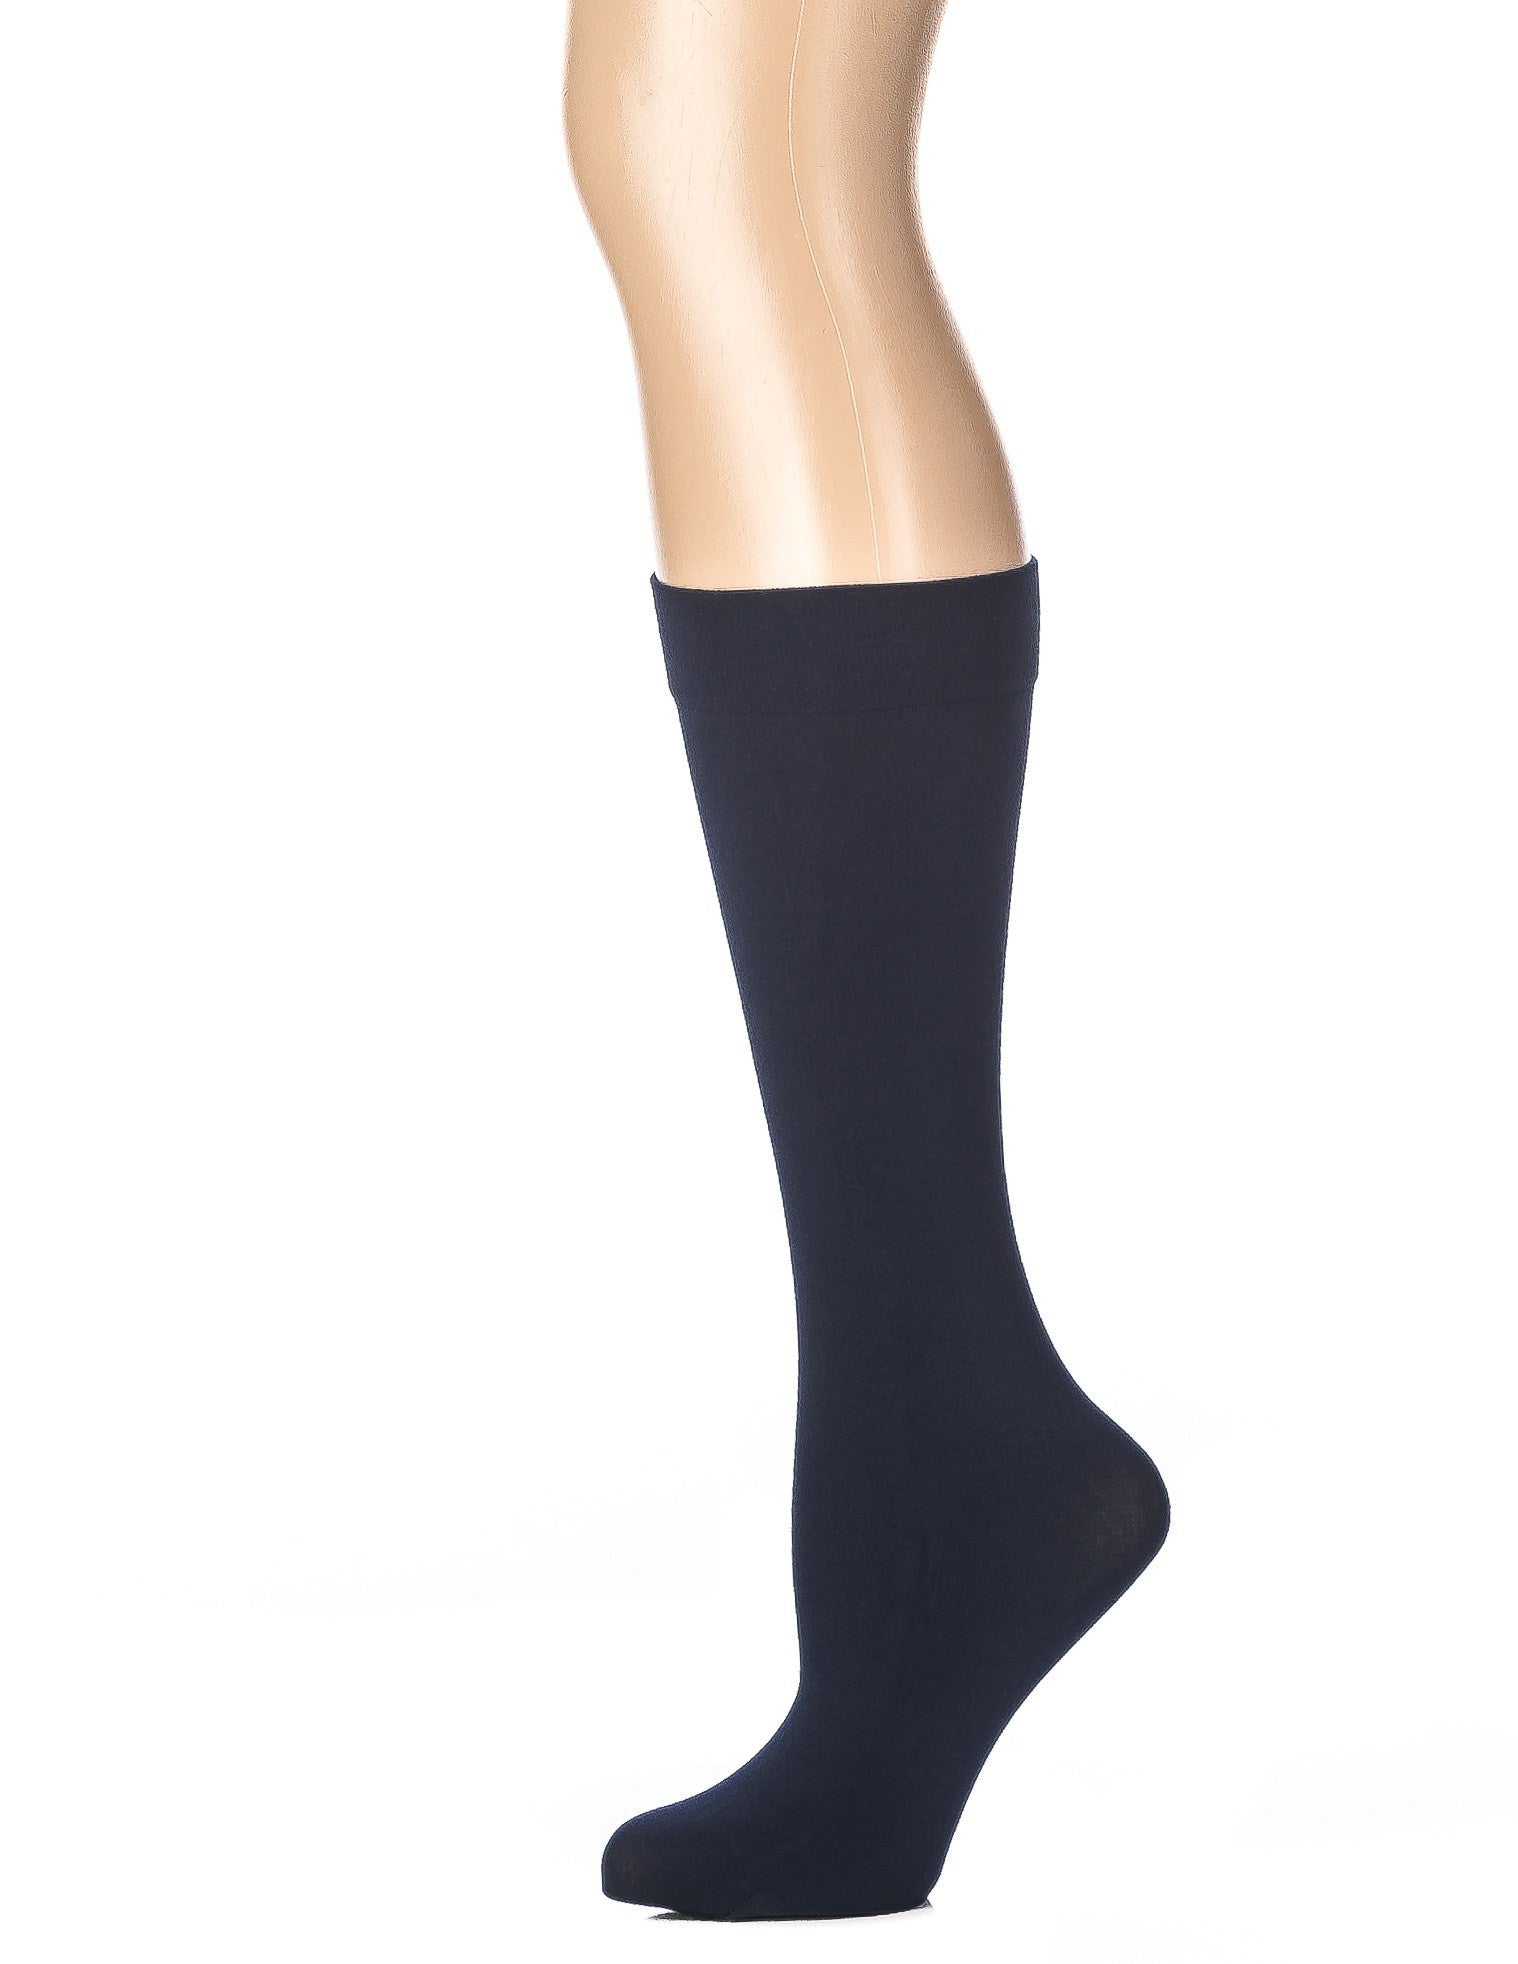 Noble Mount Women's Microfiber Knee-Hi Trouser Socks